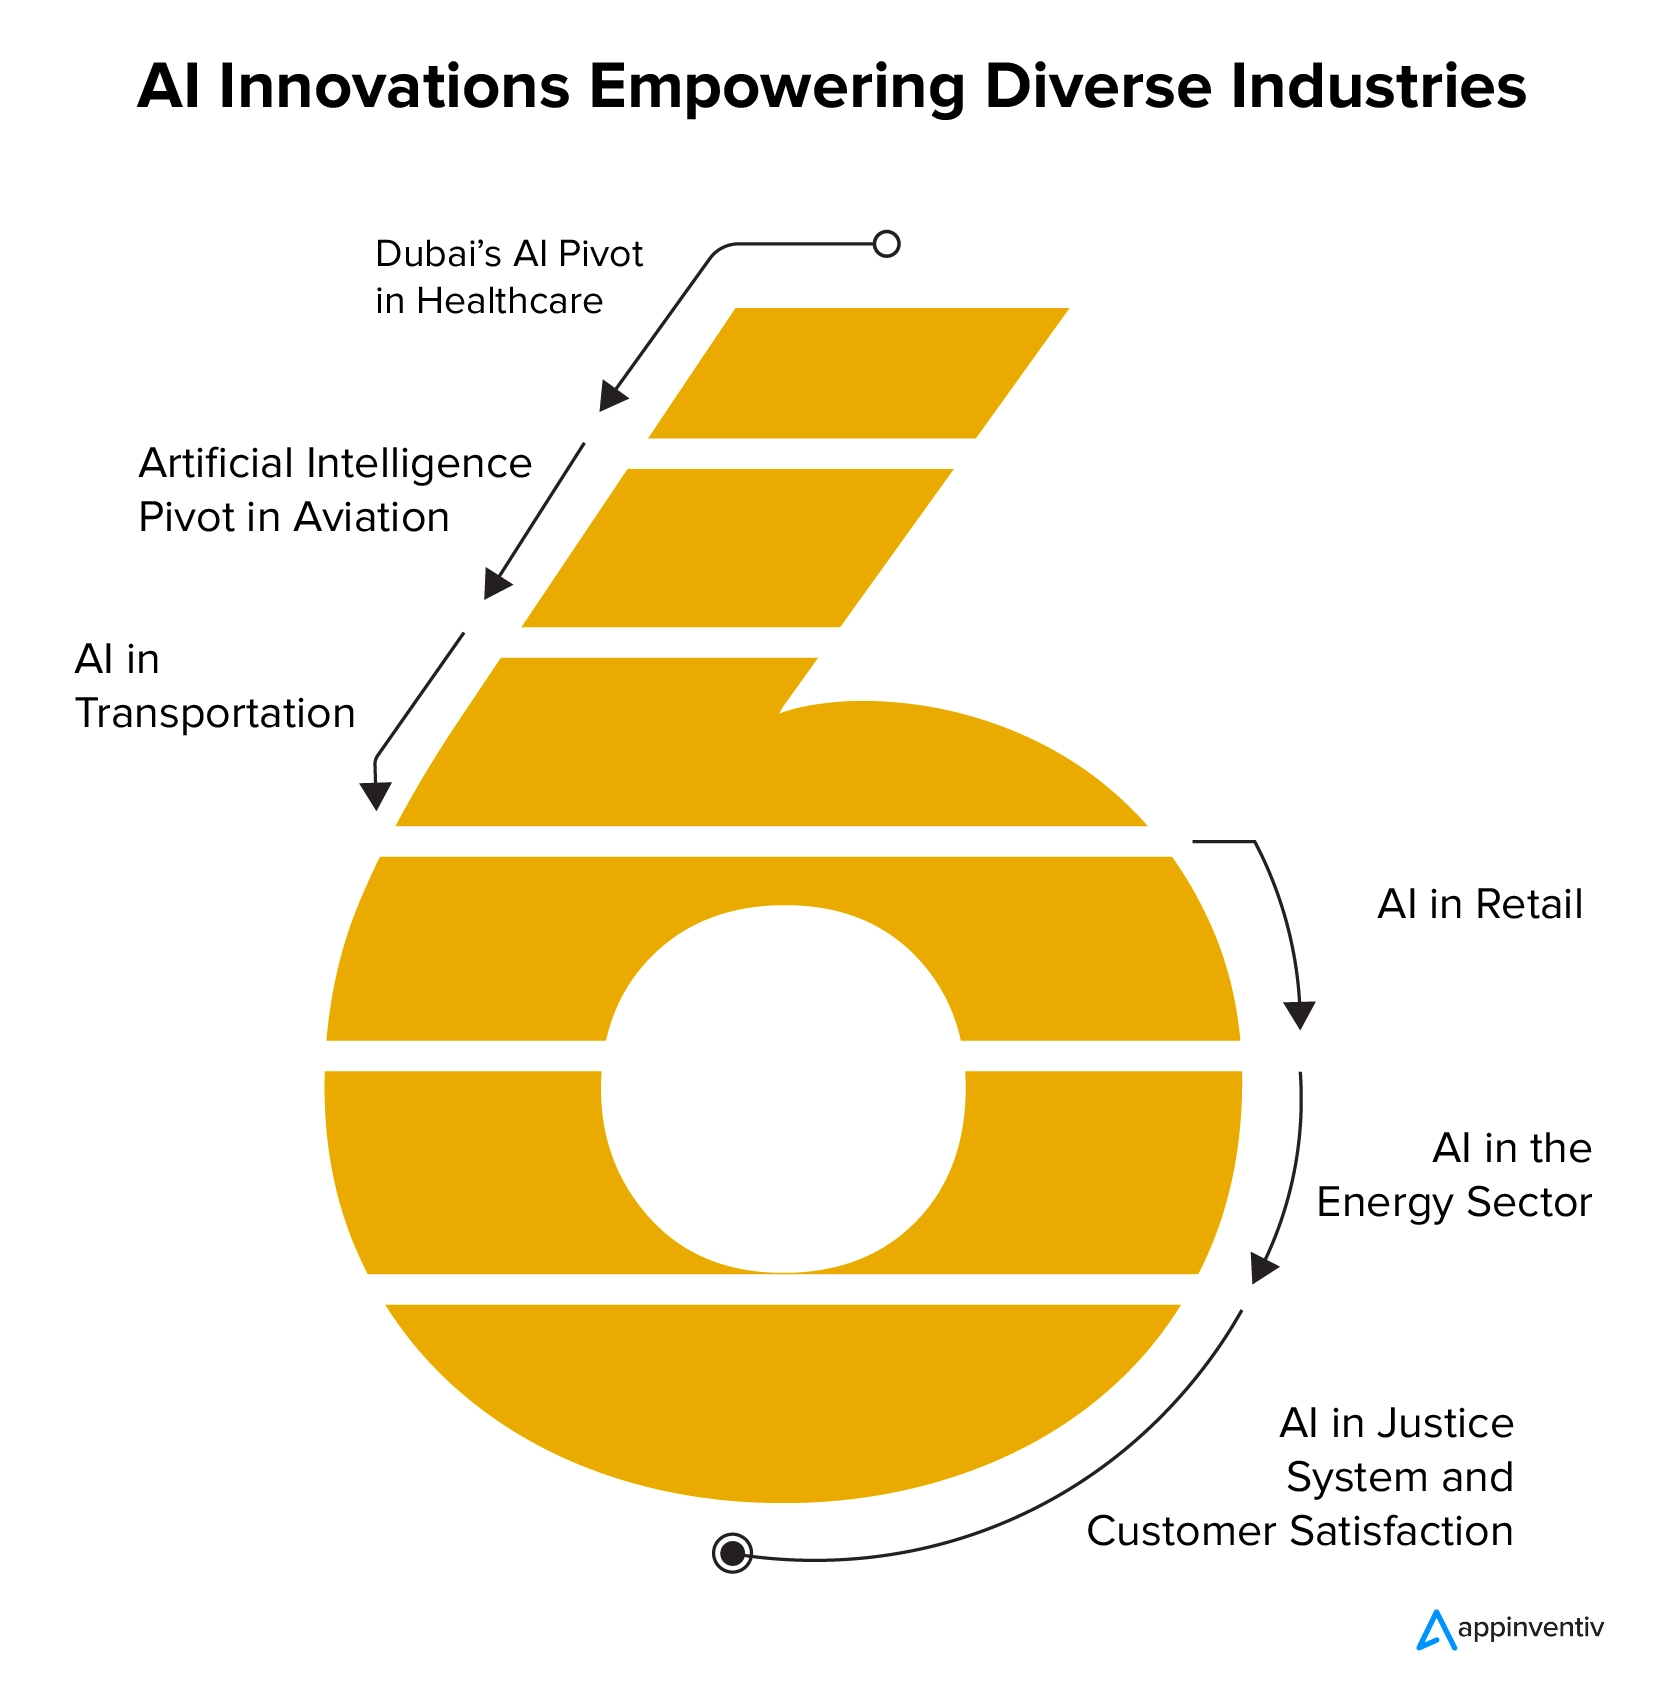 Le innovazioni dell’intelligenza artificiale danno potere a diversi settori